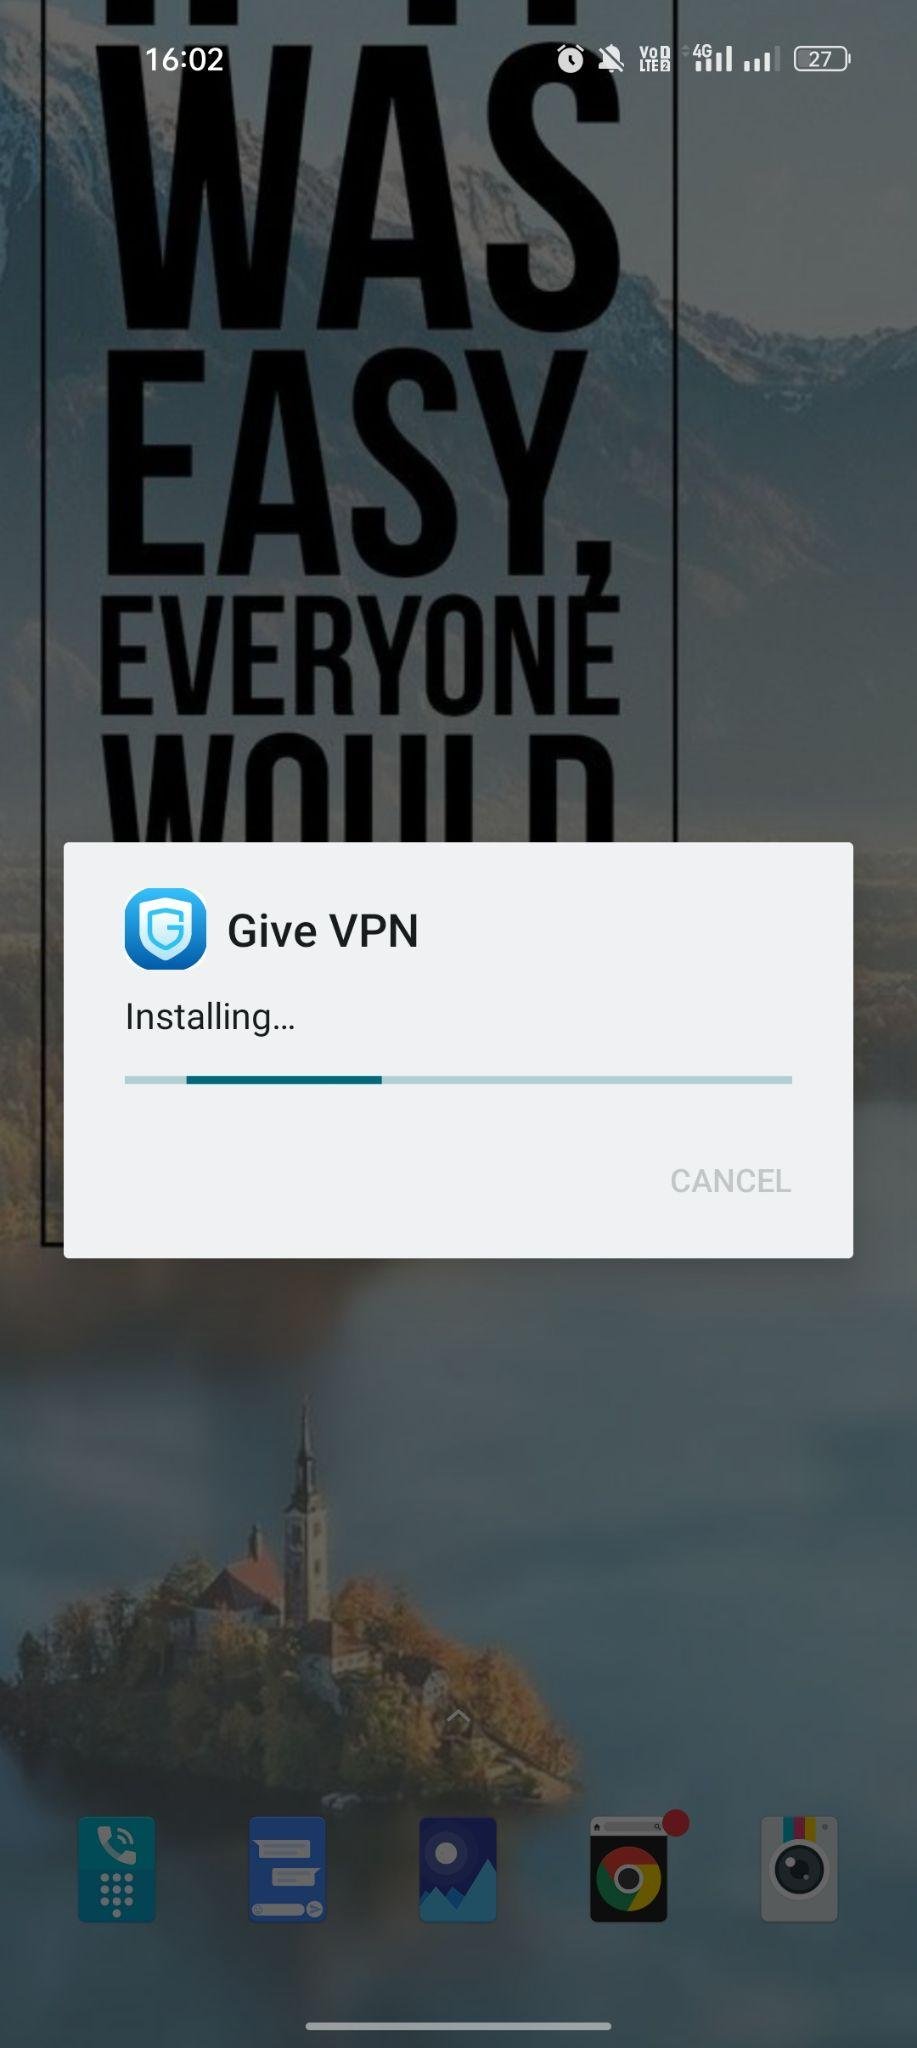 Give VPN apk installing